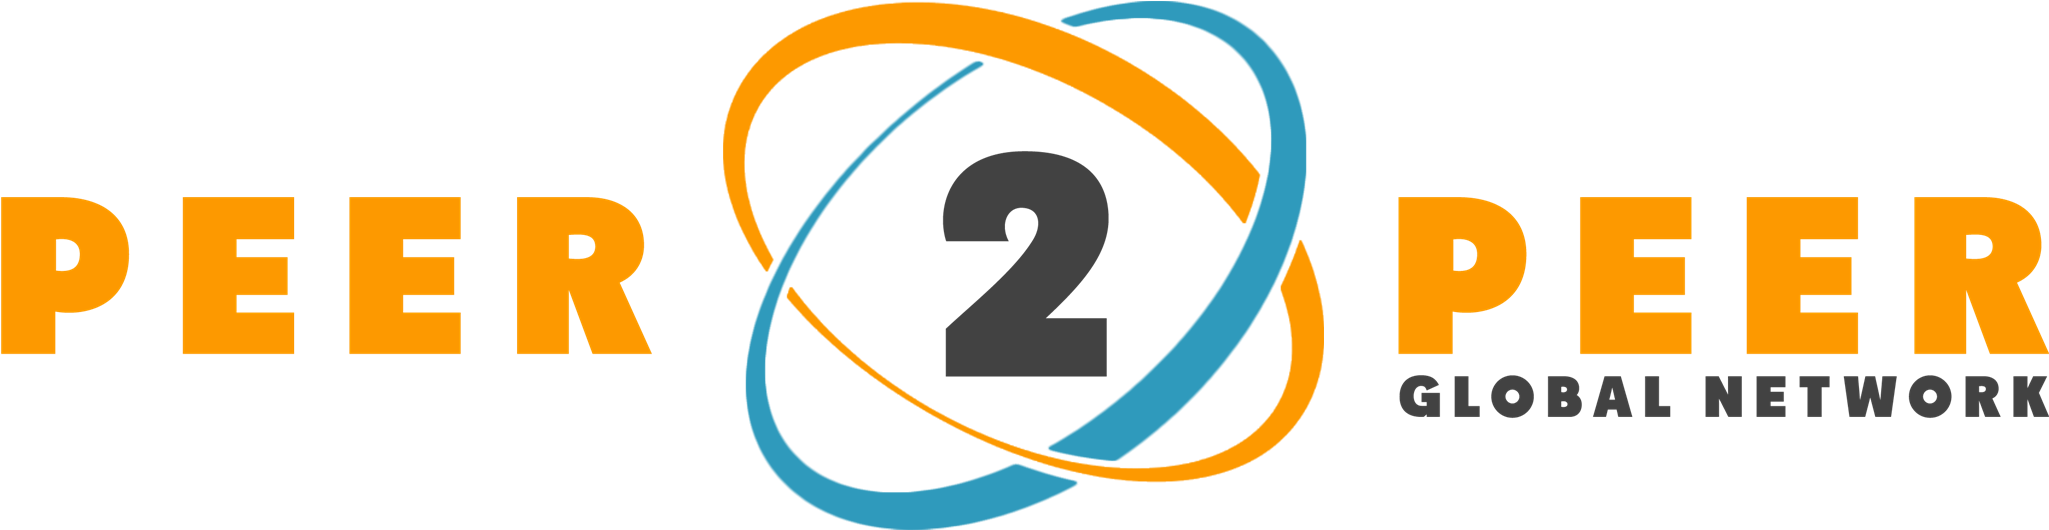 Peer2 Peer Global Network Logo